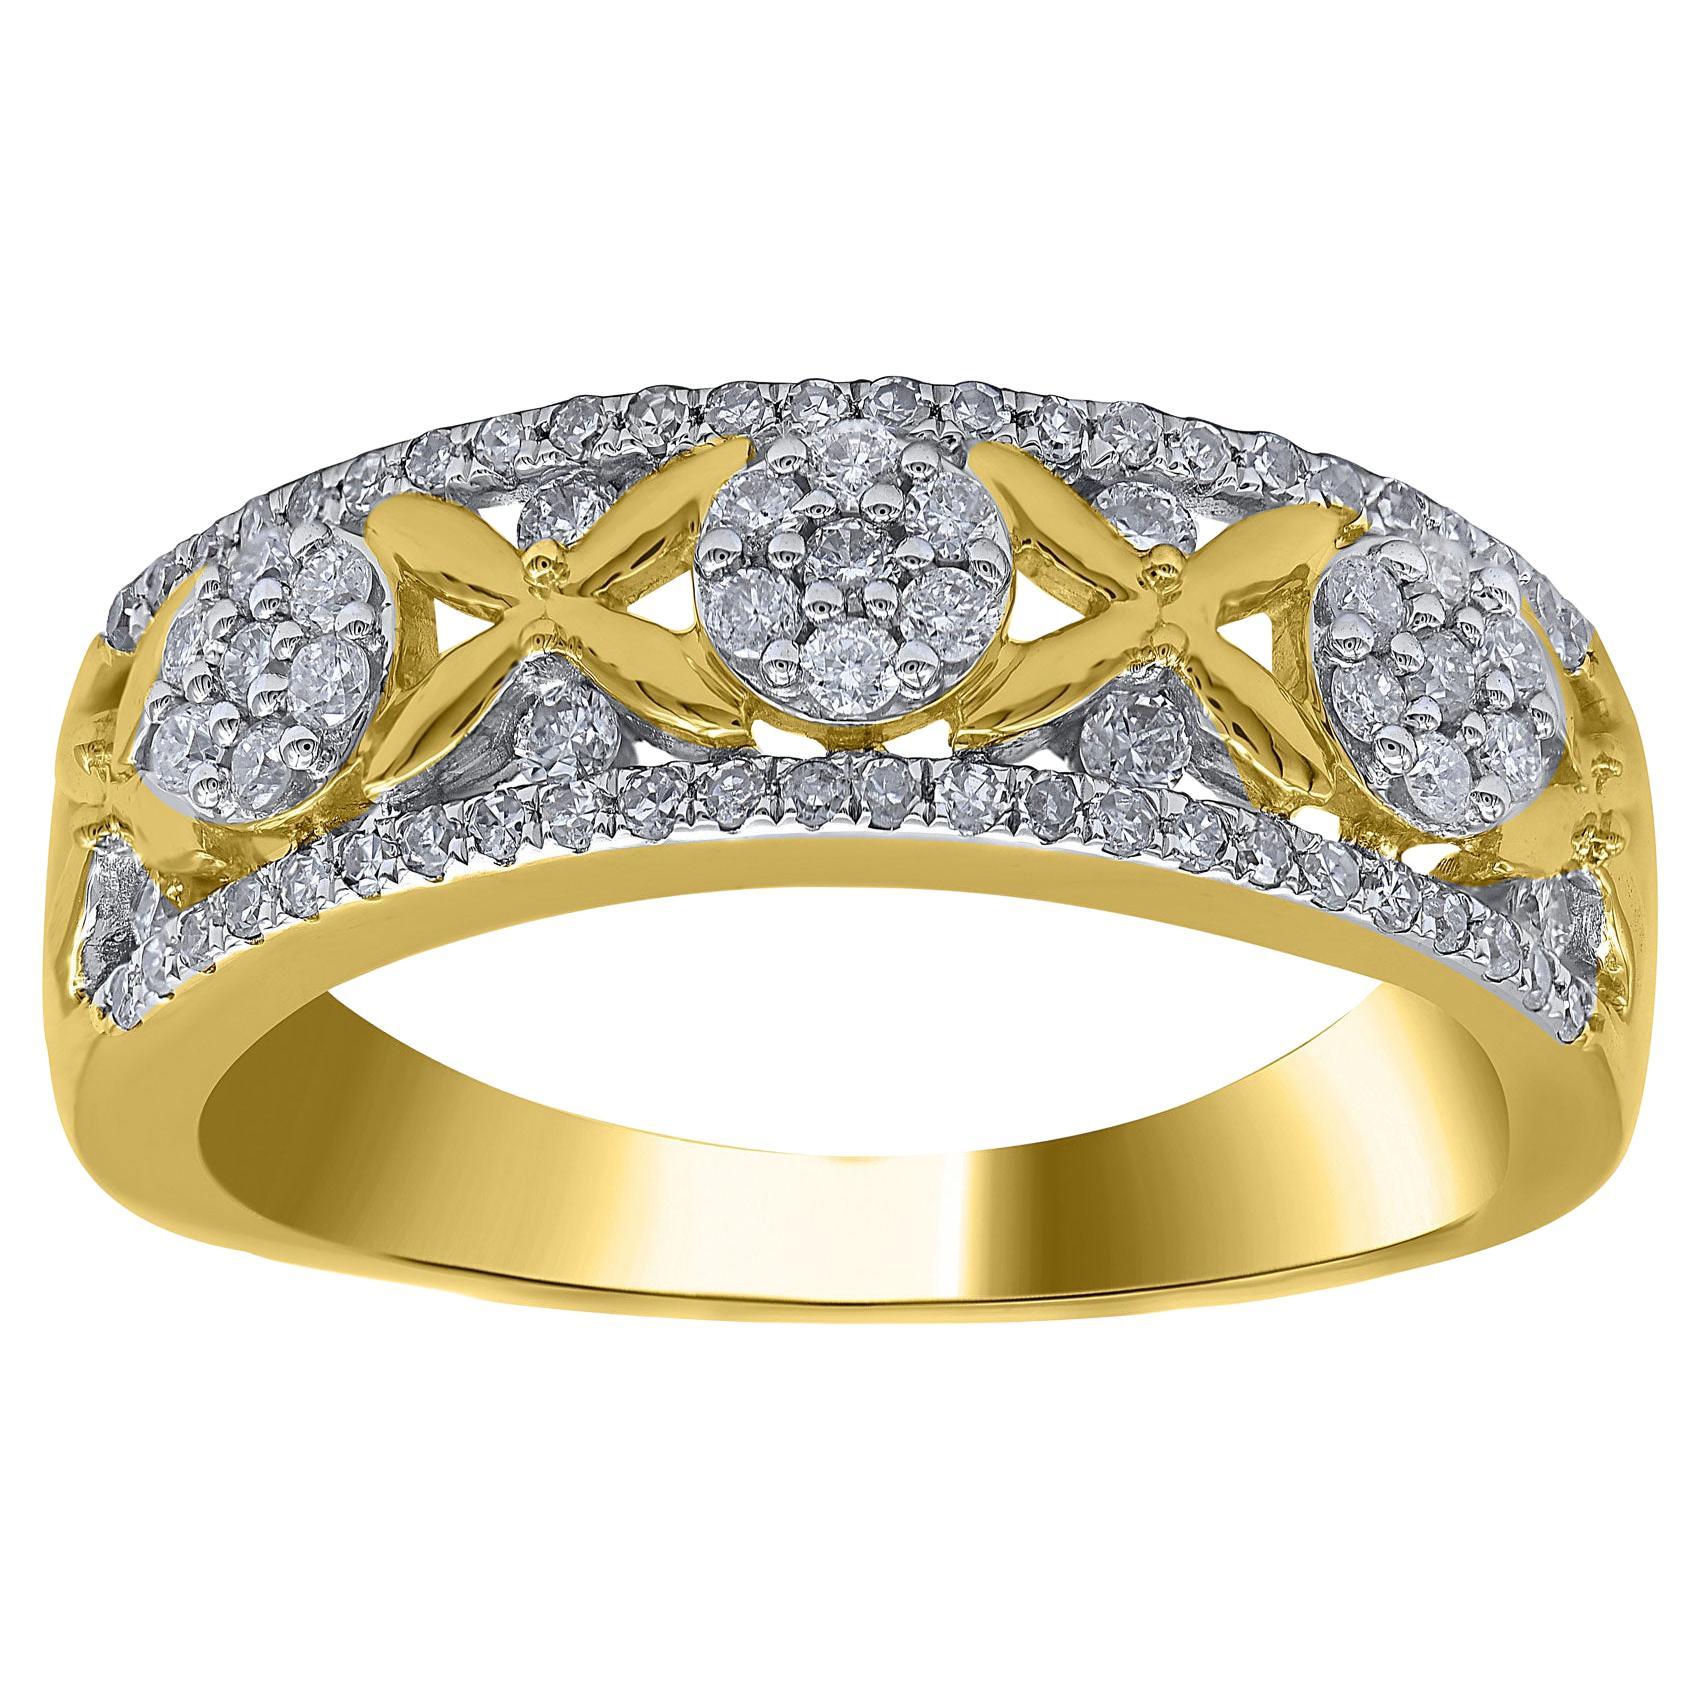 TJD 0.50 Carat Natural Round Diamond 14 Karat Yellow Gold Wedding Band Ring For Sale